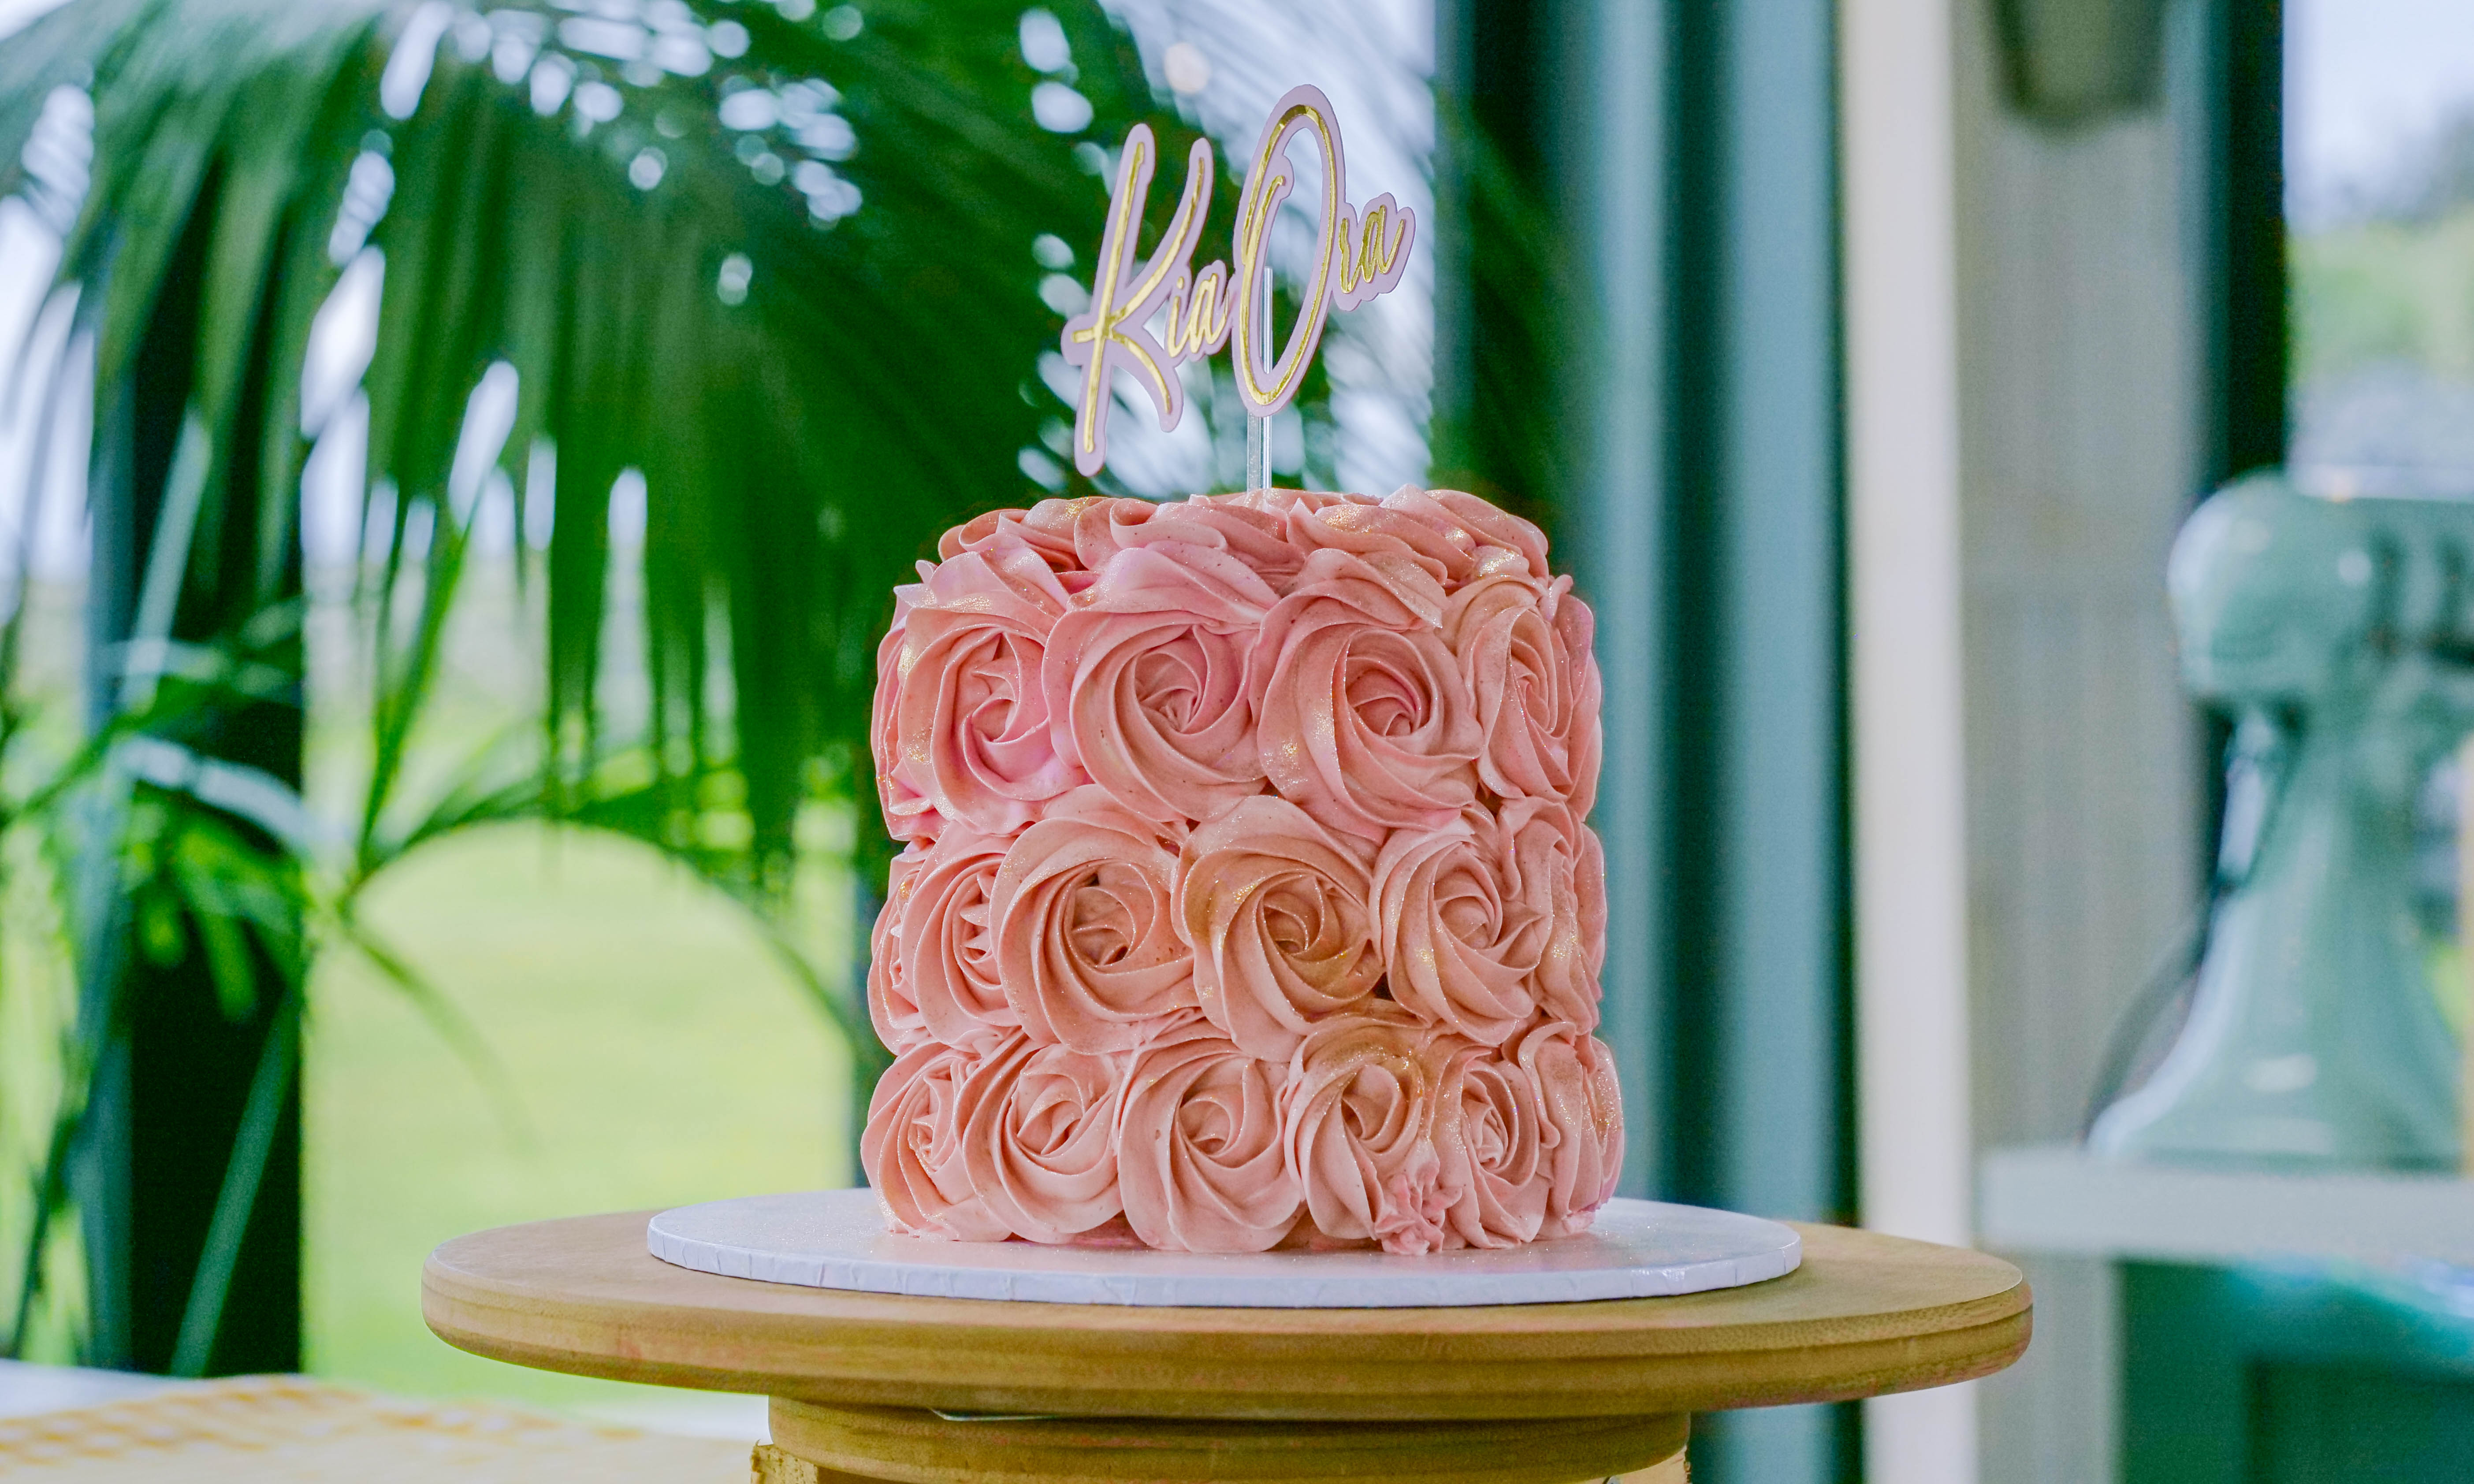 Share 58+ edible cake images manukau latest - awesomeenglish.edu.vn